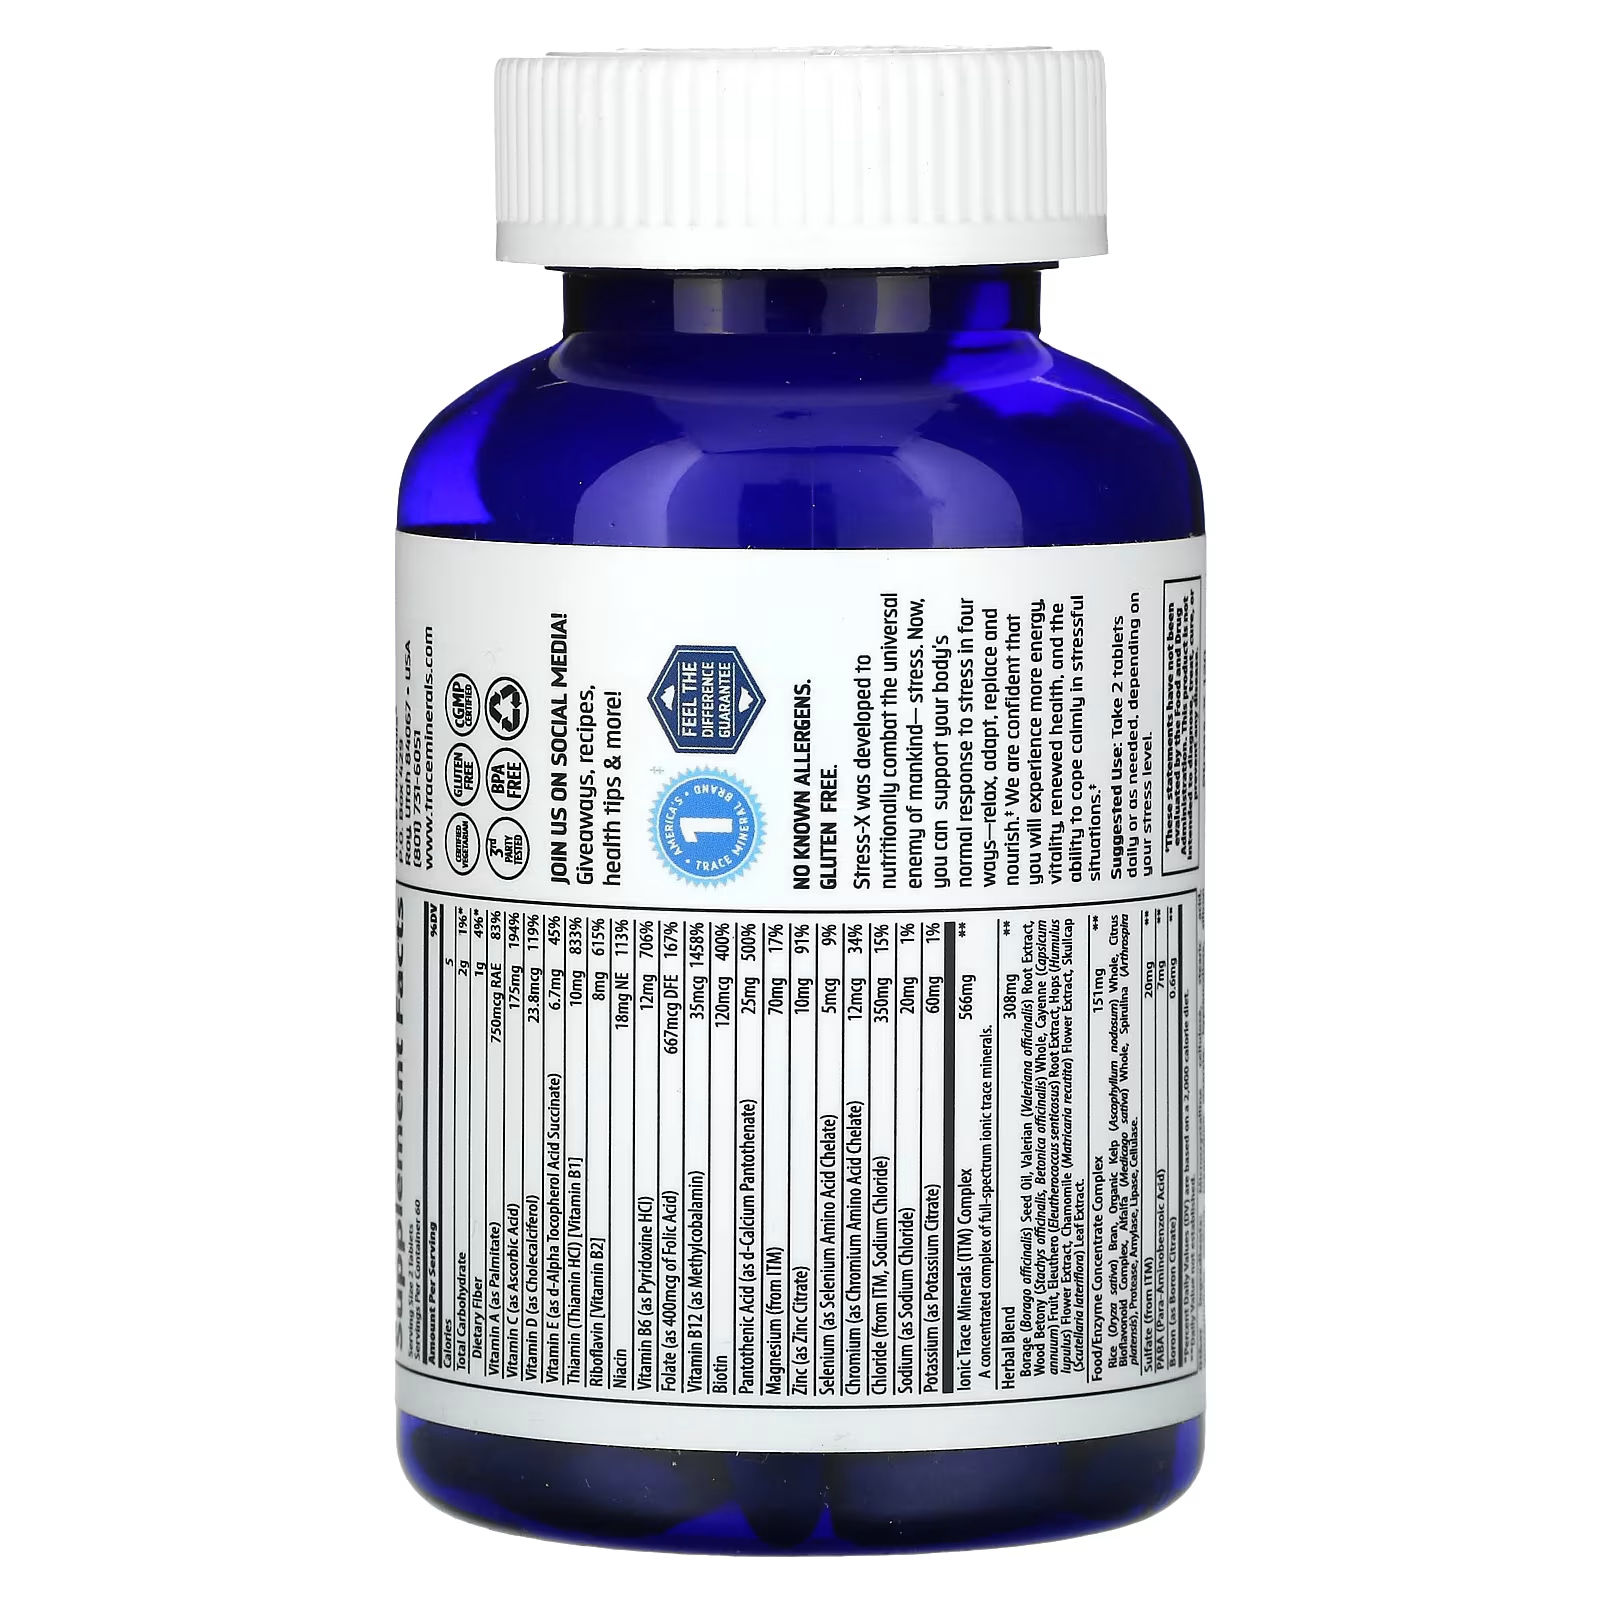 Пищевая добавка Trace Minerals Stress-X, 120 таблеток шипучие таблетки trace minerals magnesium 8 тюбиков по 10 таблеток